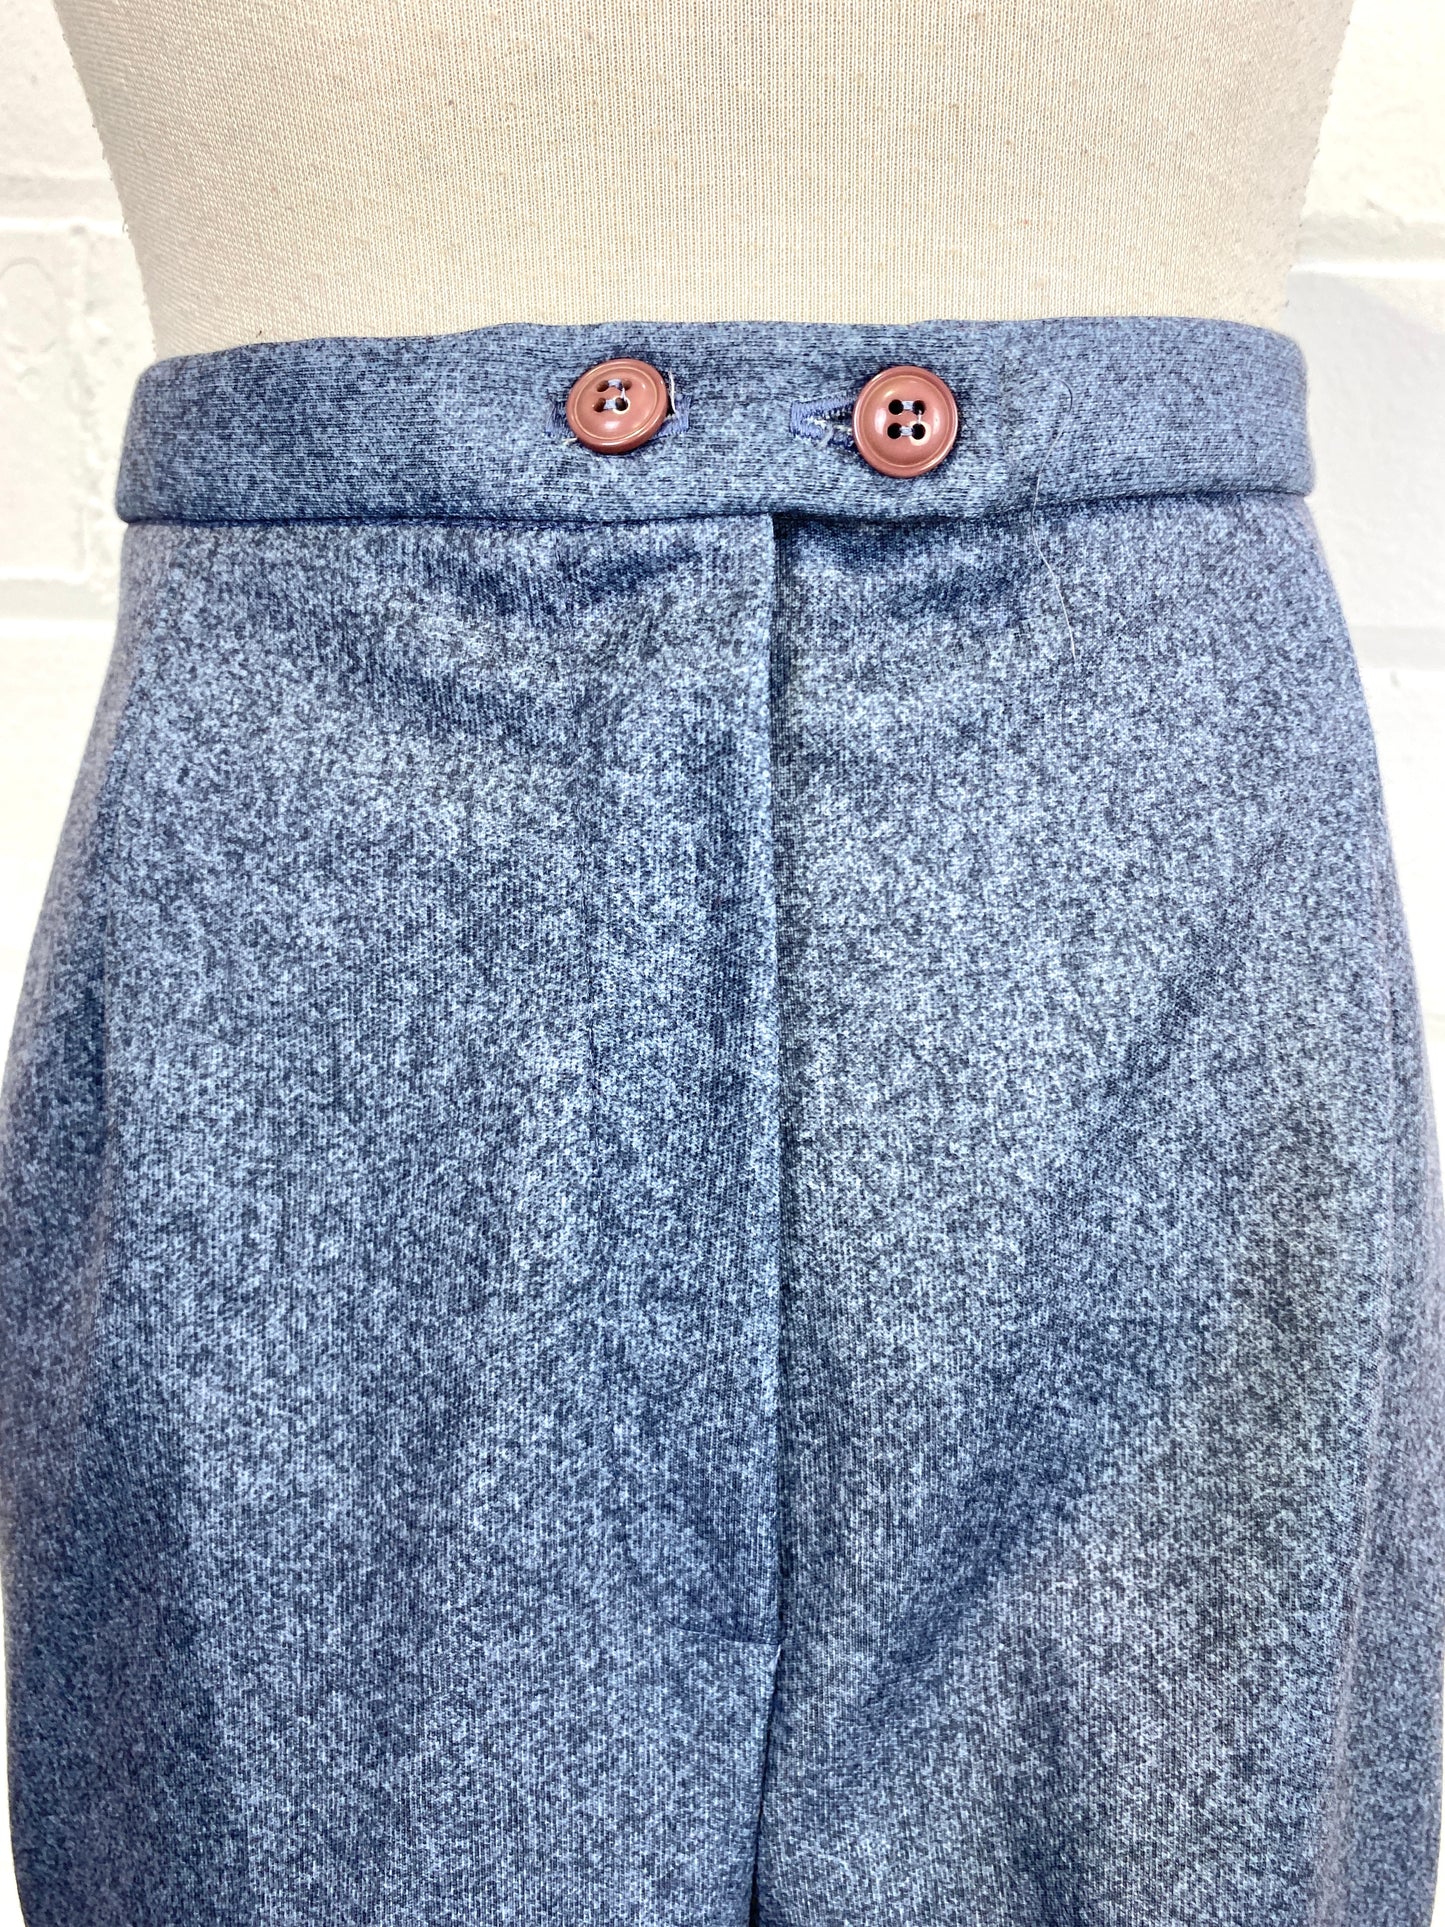 Vintage Deadstock 1970s Women's 2-Piece Blue Pant Suit